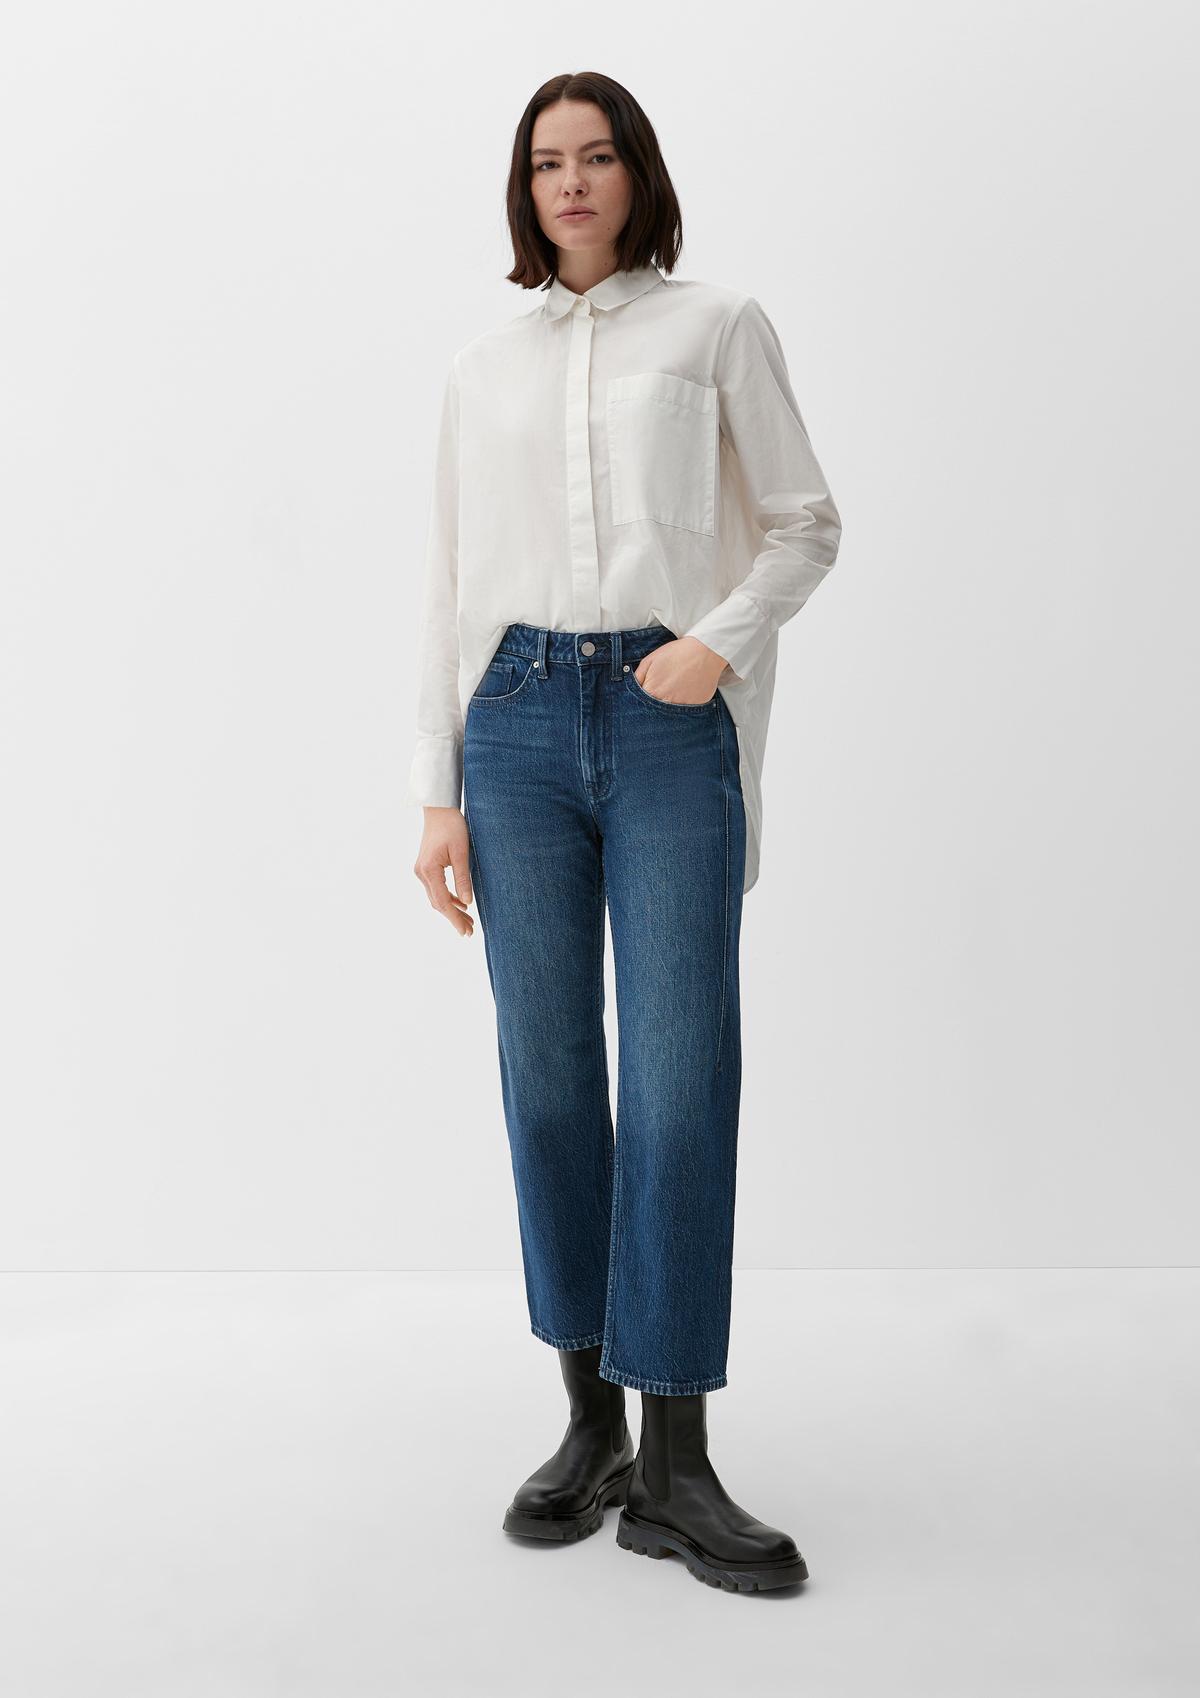 Regular: kratšie džínsy rovného strihu